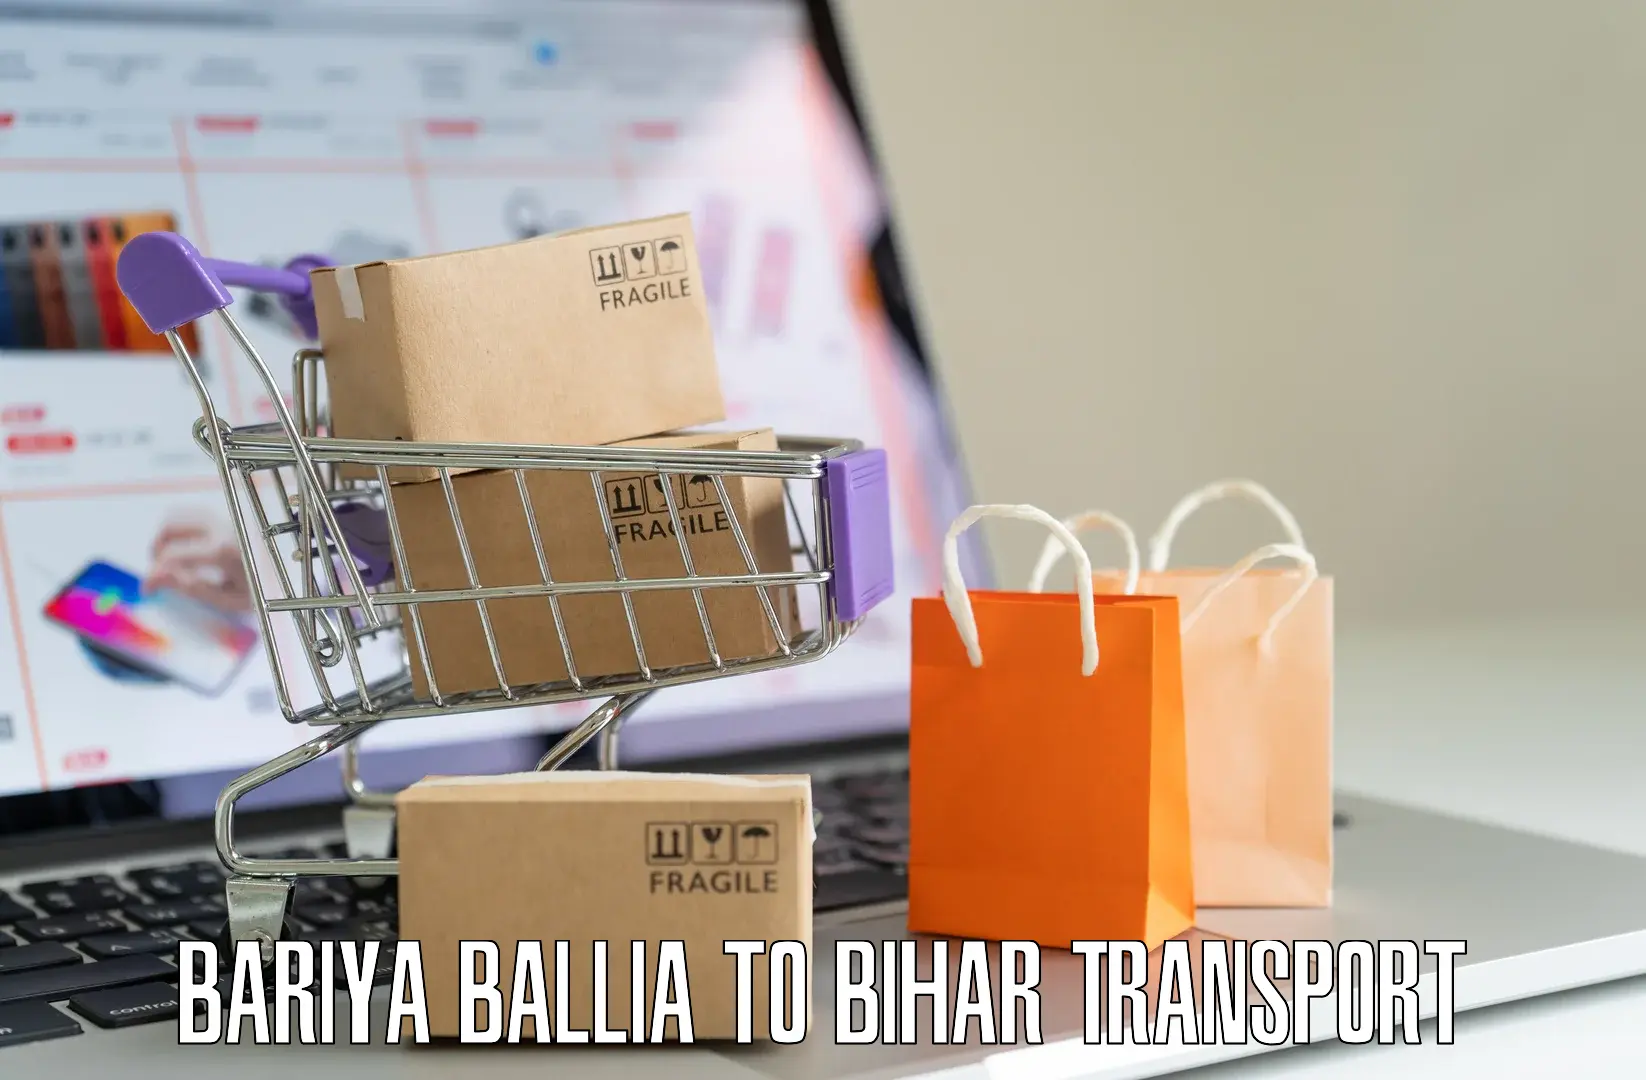 Two wheeler transport services Bariya Ballia to Jiwdhara